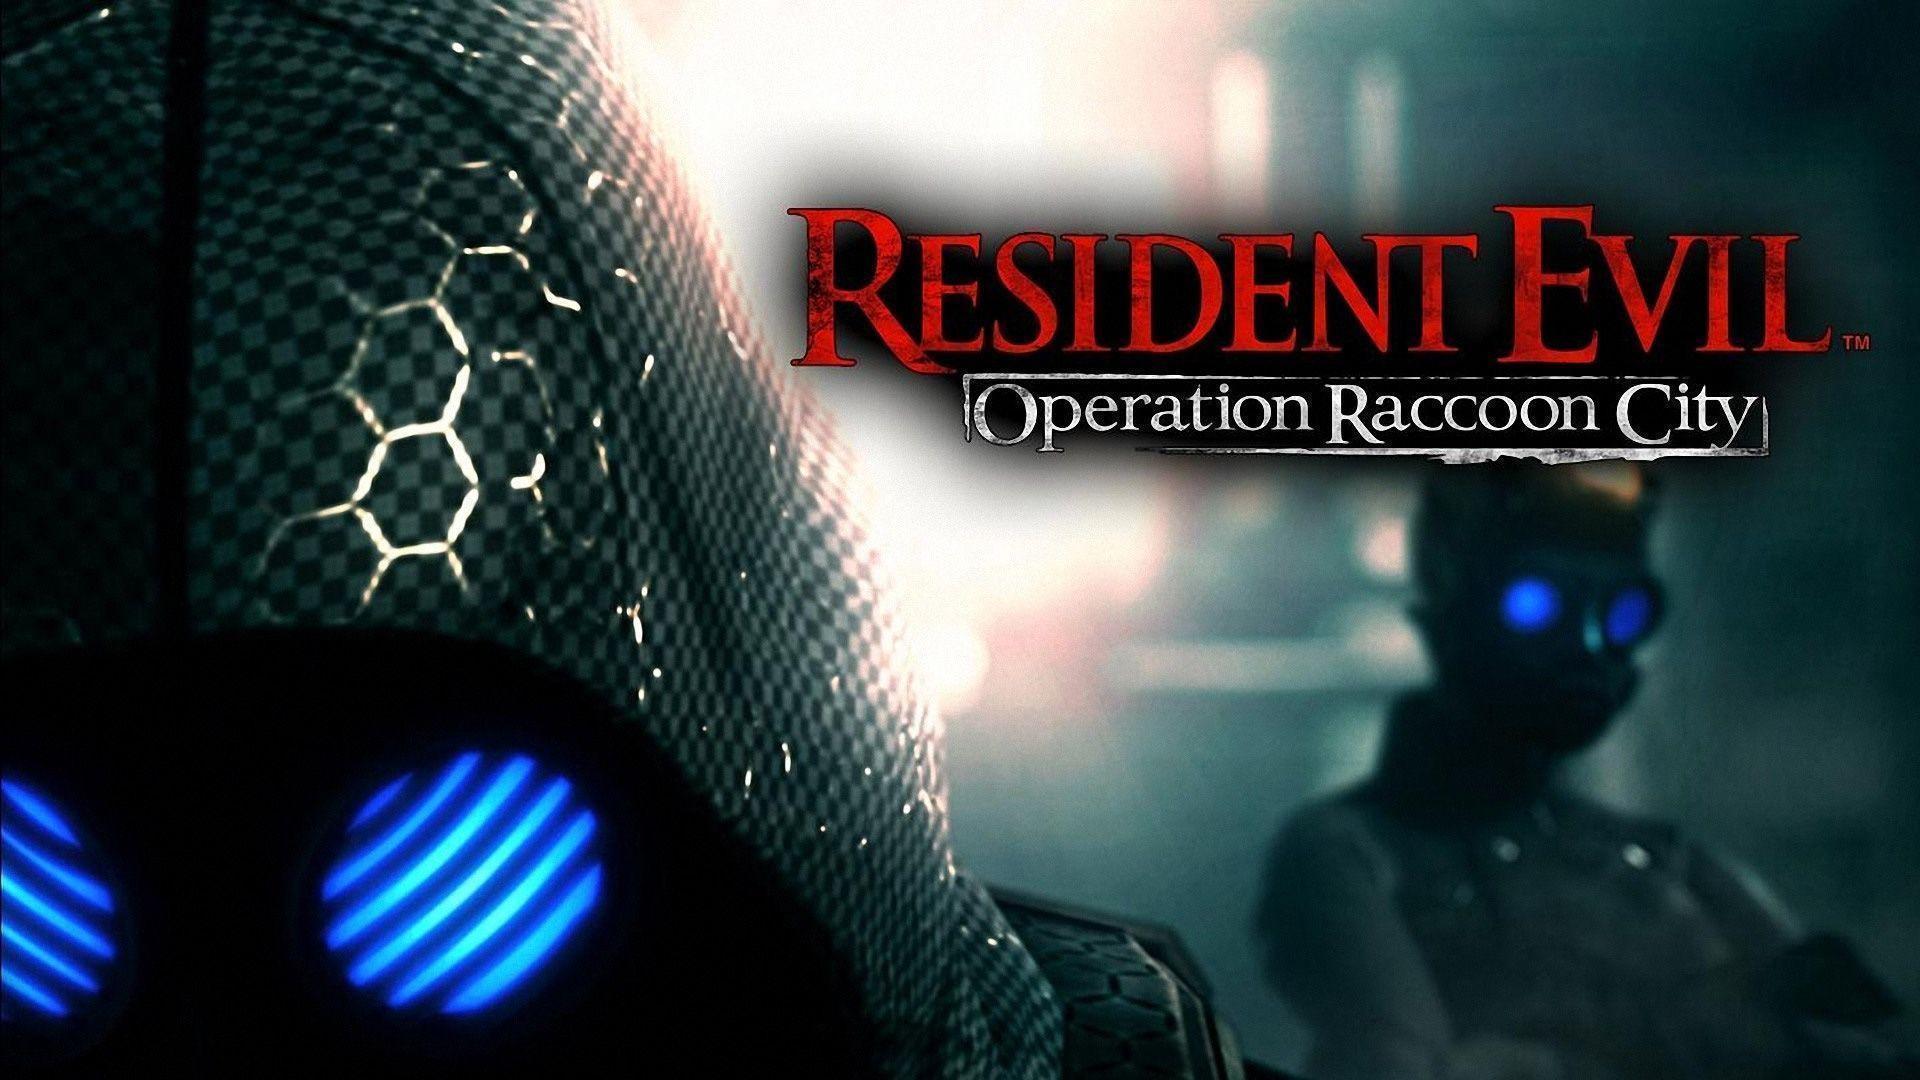 Resident Evil: Operation Raccoon City Wallpaper. Resident